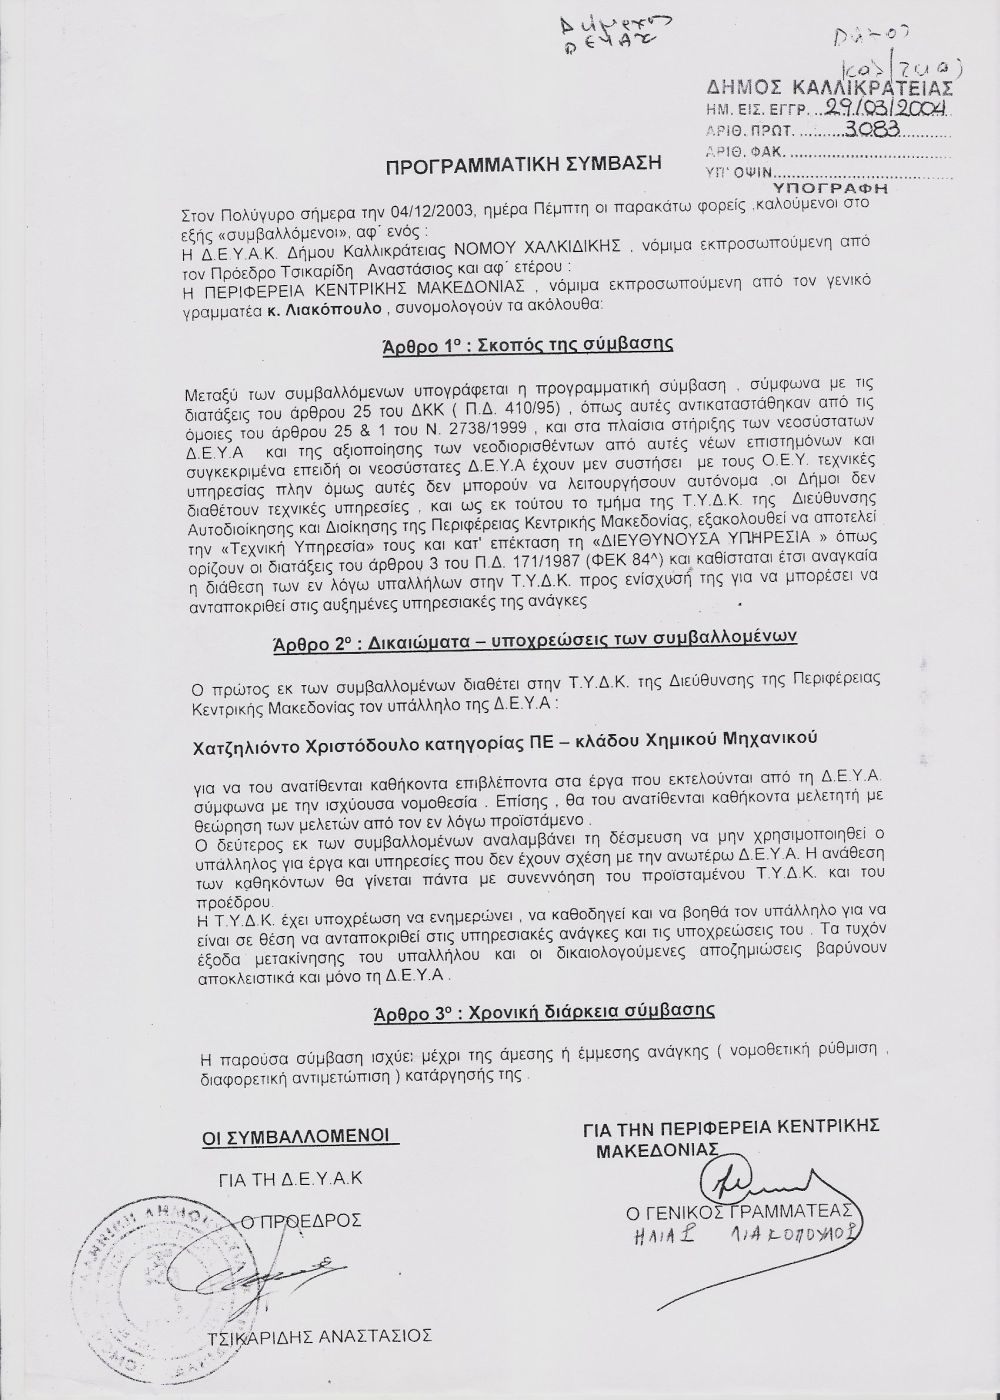 2004 - Προγραμματική σύμβαση Περιφέρειας Κεντρικής Μακεδονίας με ΔΕΥΑ Καλλικράτειας για ανάθεση καθηκόντων επίβλεψης και μελέτης στον χημικό μηχανικό.